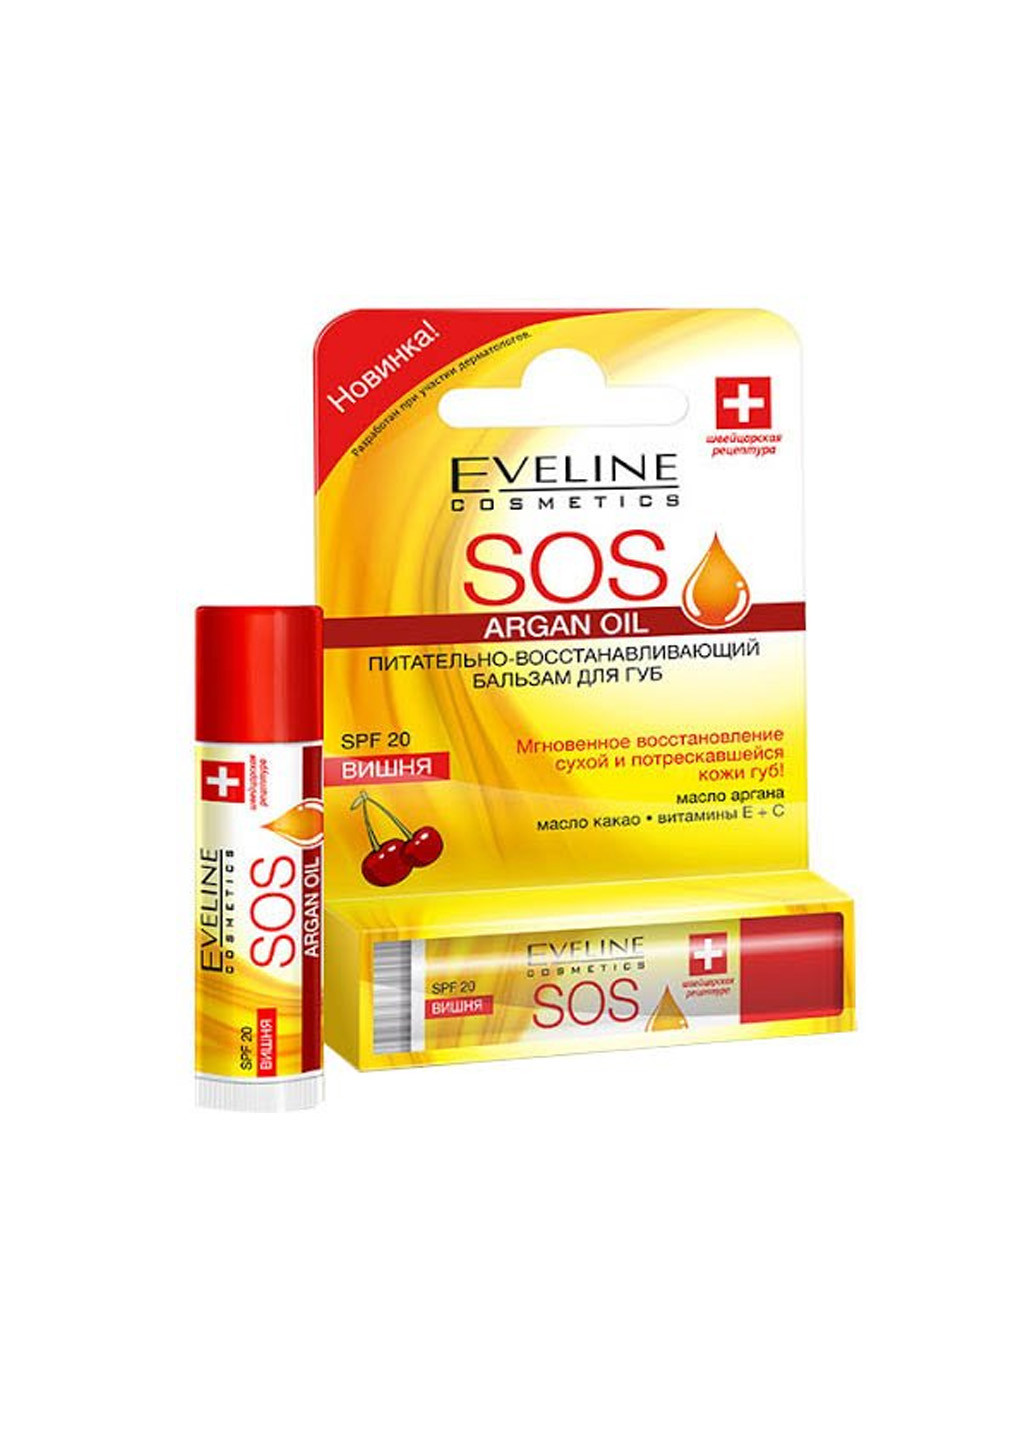 Питательно-восстанавливающий бальзам для губ eveline sos exotic mango (4.5 мл) Eveline Cosmetics 5903416017042 (257074995)